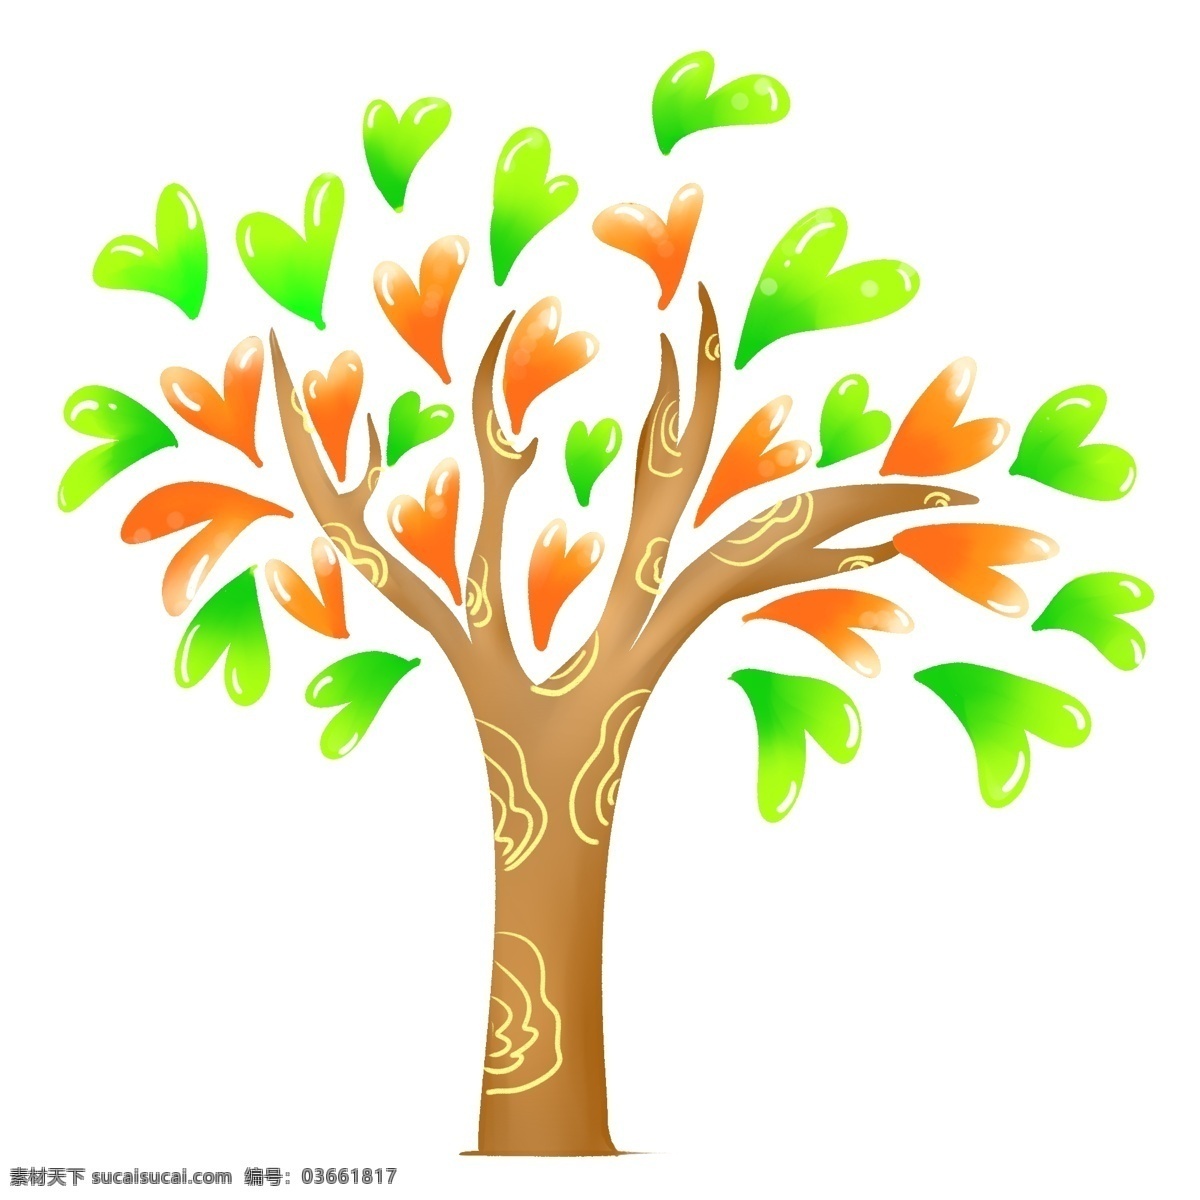 心形 立体 创意 树 插图 黄色树枝 绿色心形 橙色心形 心形创意树 有爱的创意树 精美的创意树 创意树装饰